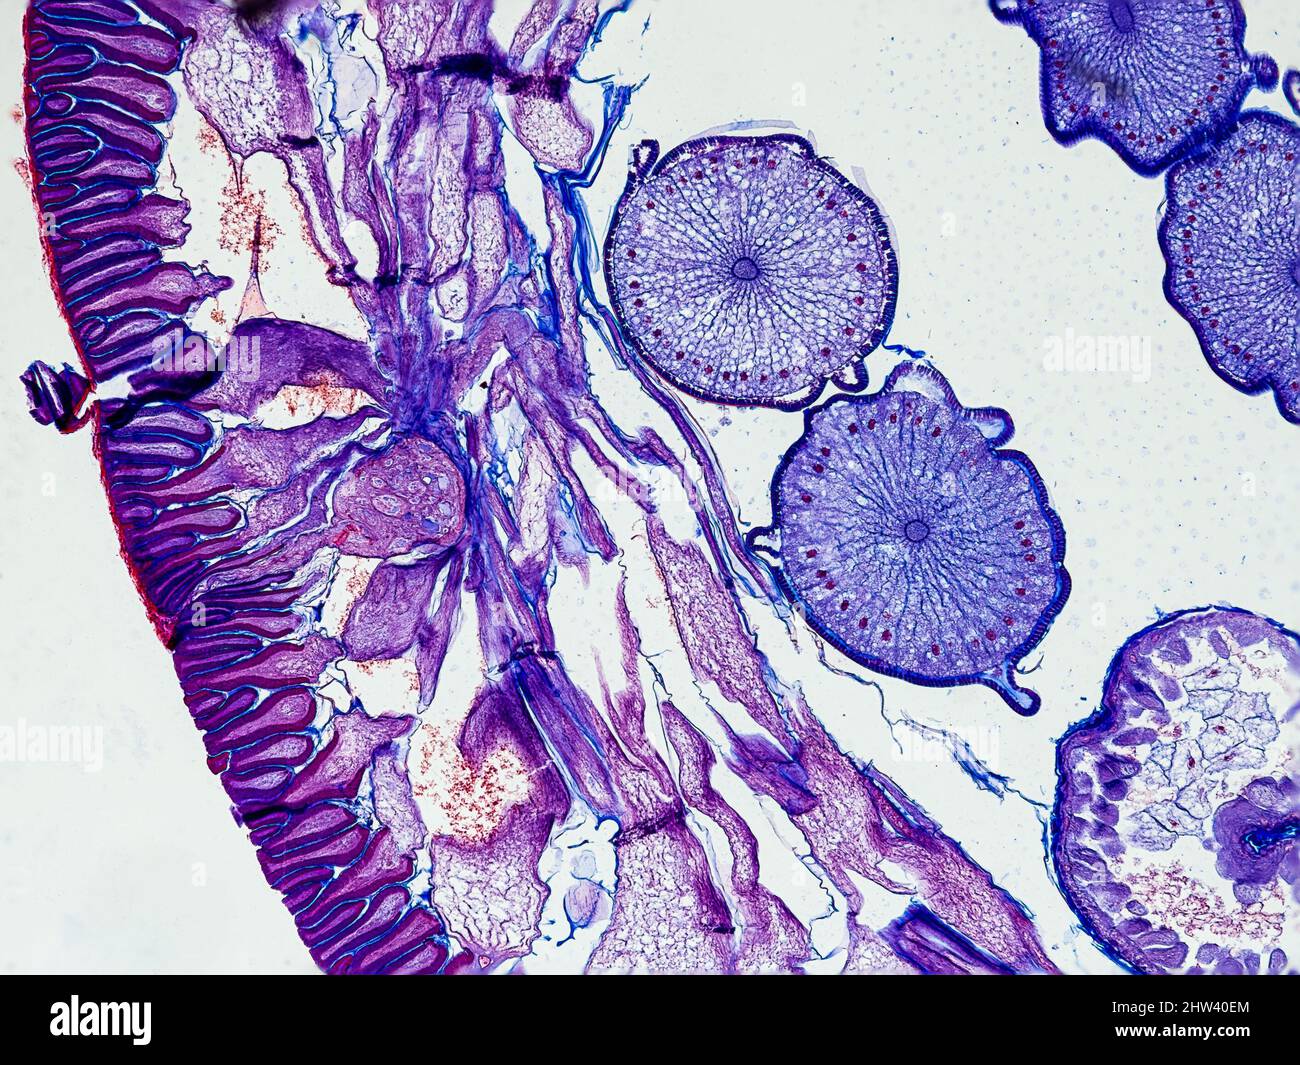 section transversale d'ascaris megalocephala sous le microscope montrant sa cuticule, ses cellules mésodermiques, ses pseudocélomes et ses ovaires - microscope optique x100 mag Banque D'Images